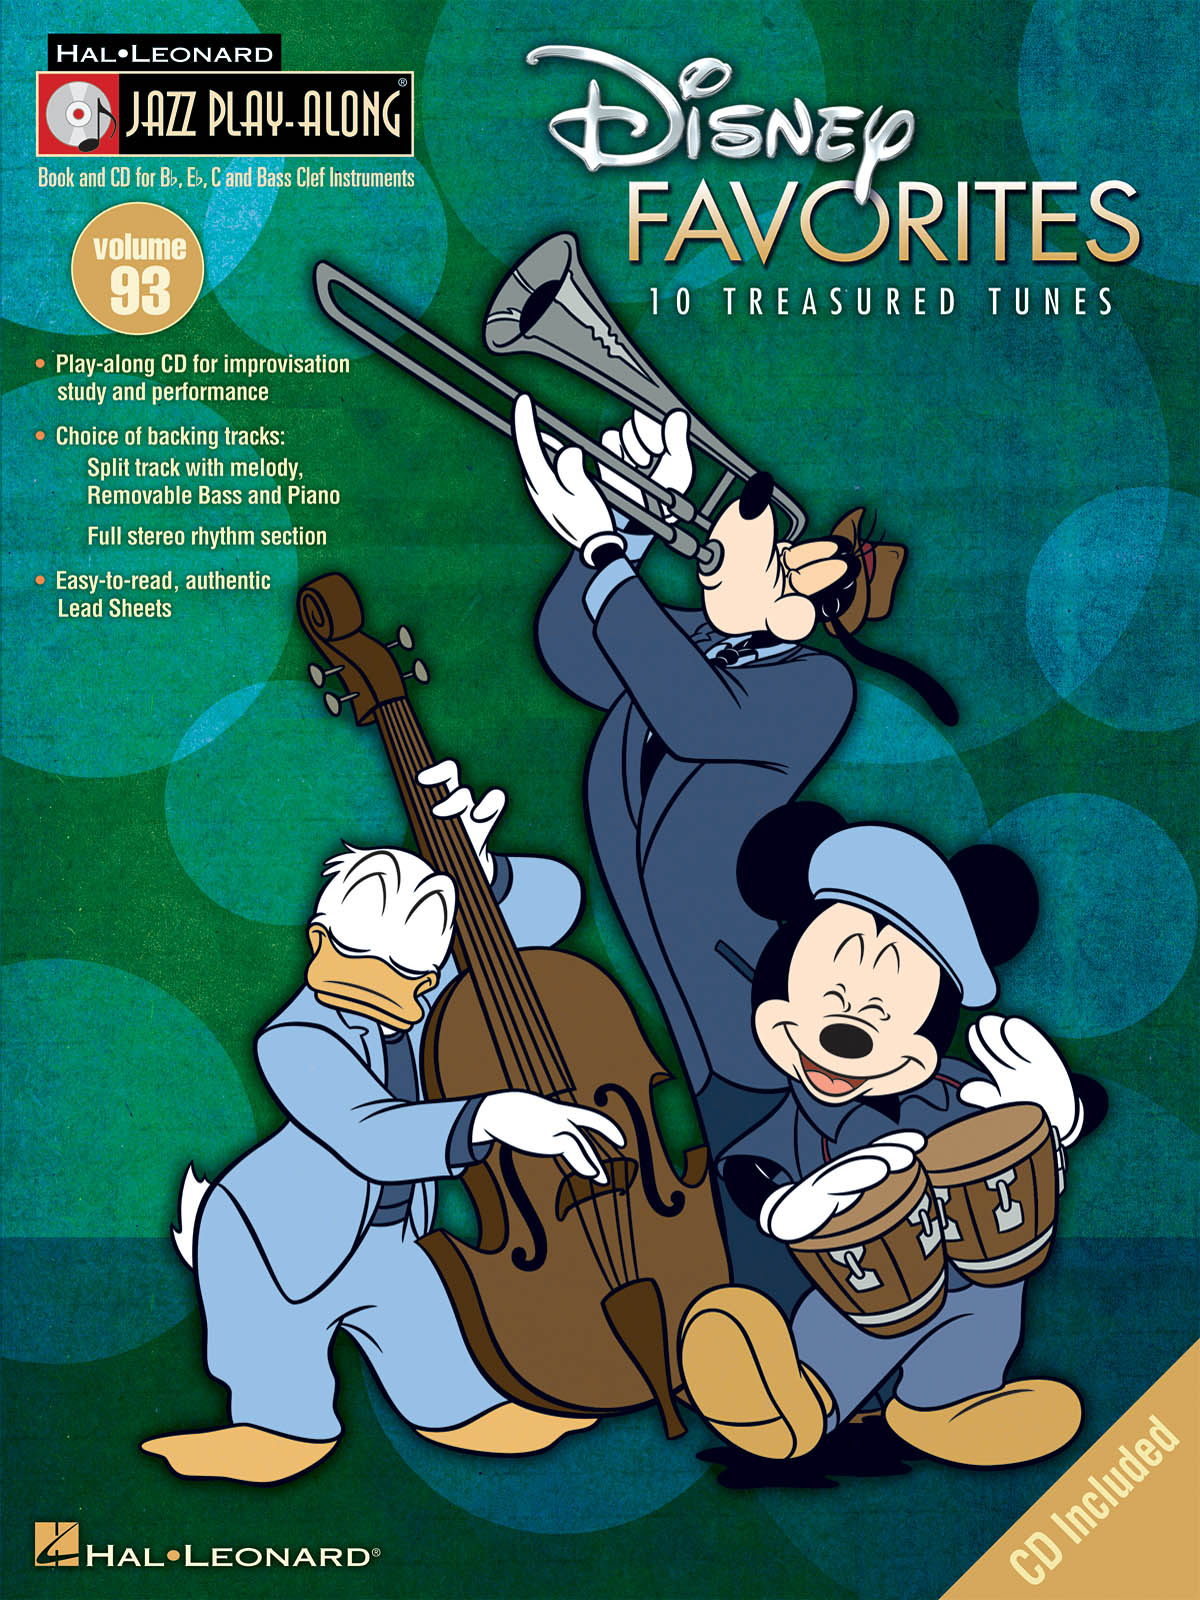 Disney Favorites - Jazz Play-Along Volume 93 - melodie s akordy pro nástroje v ladění C